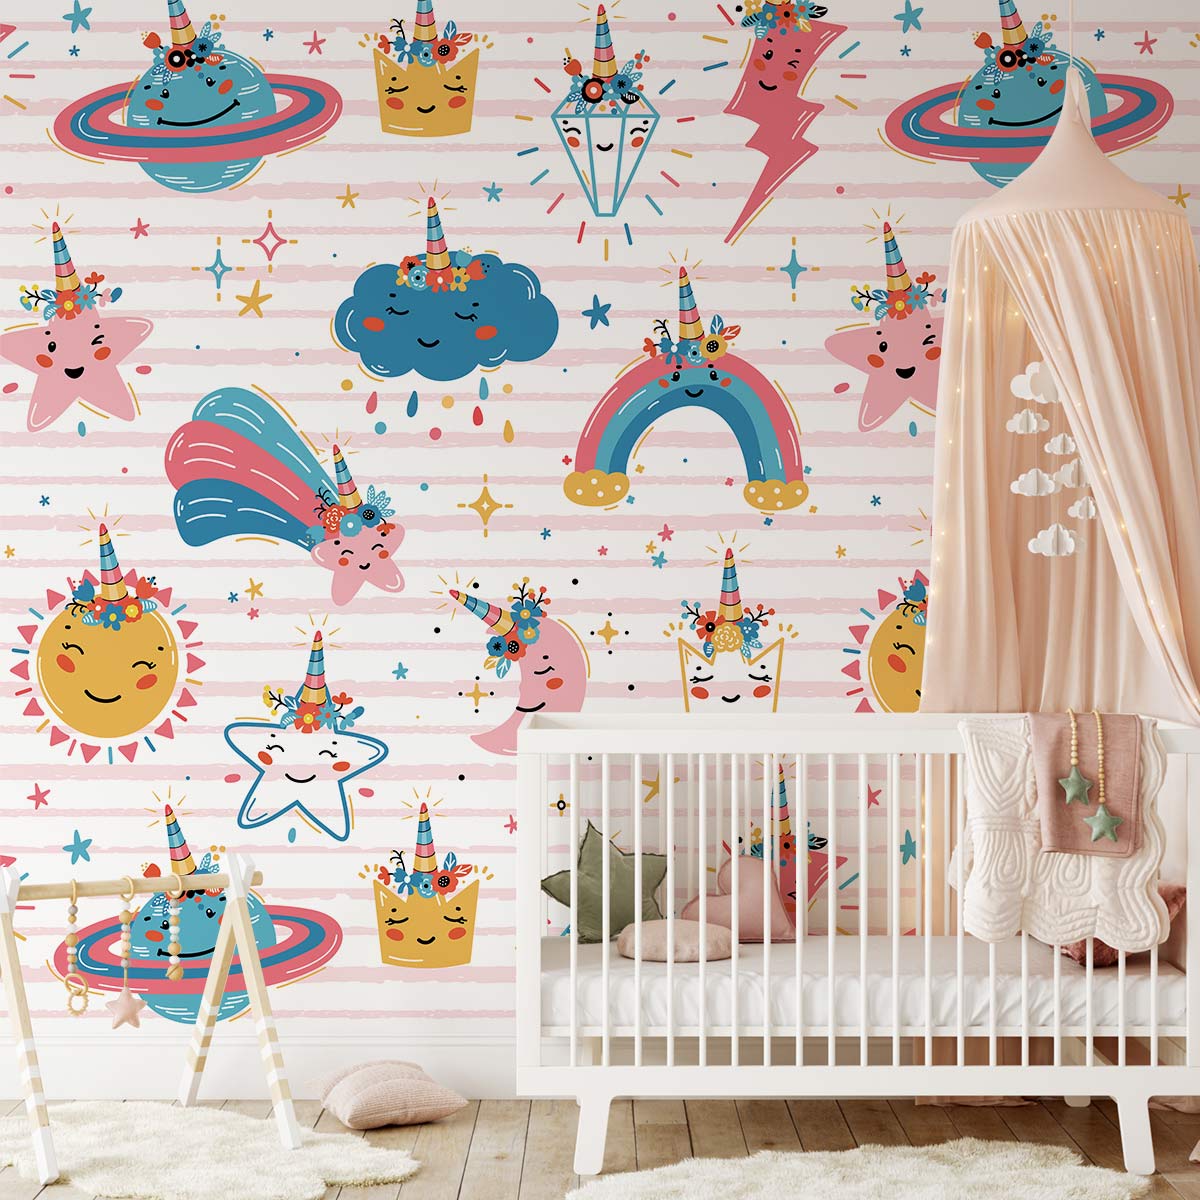 rainbow stars Wallpaper Mural for kids' Room decor